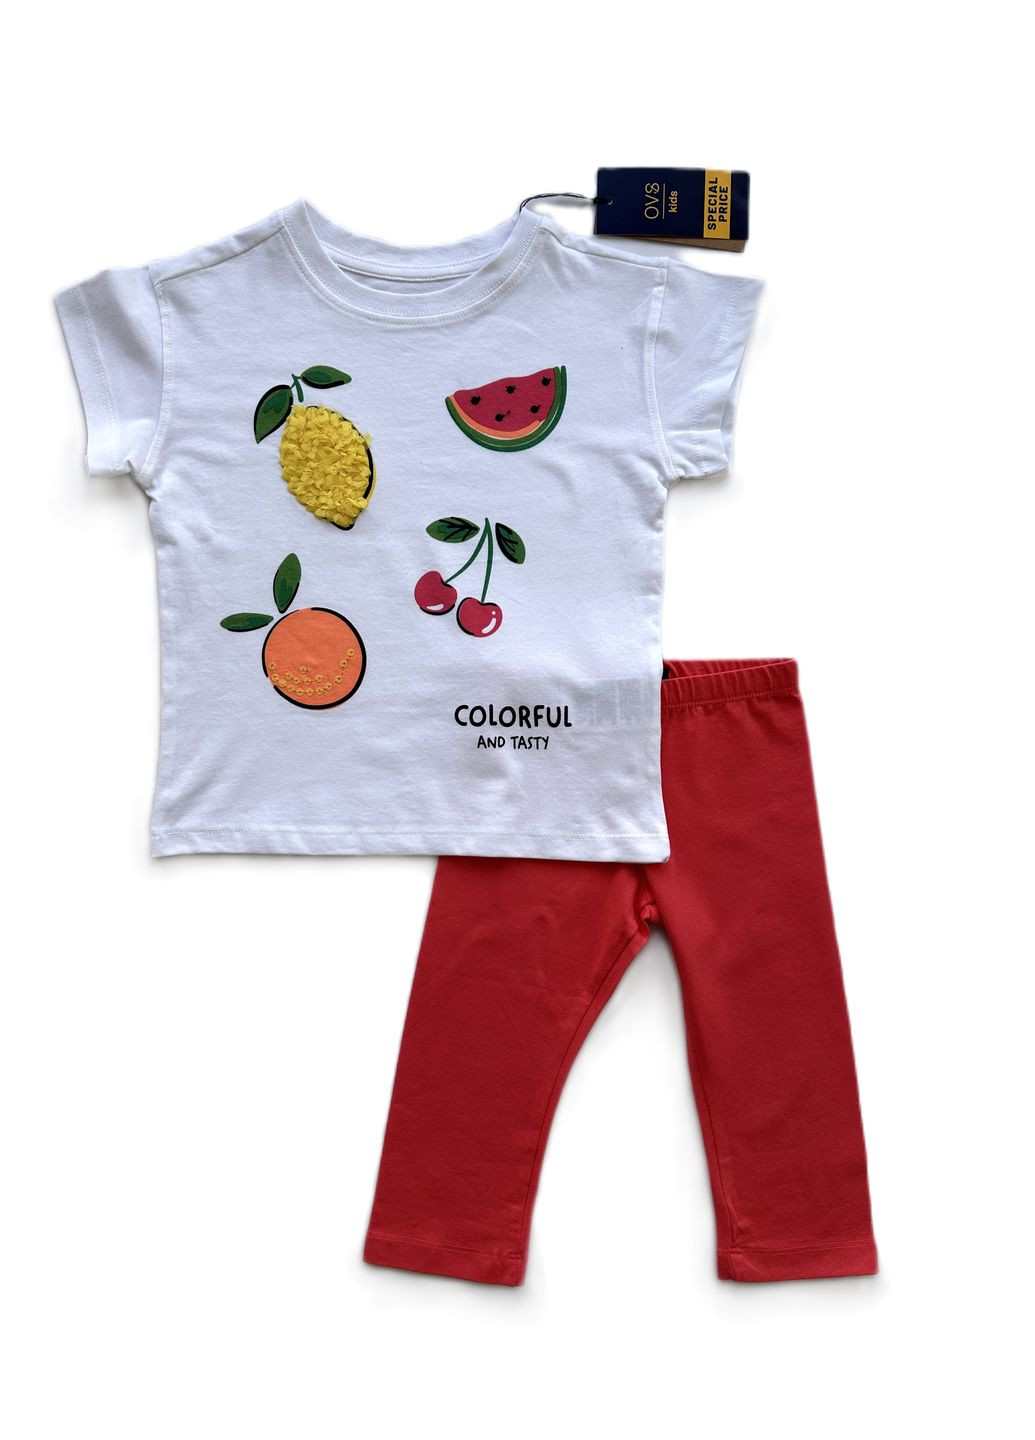 Коралловый летний комплект костюм для девочки белая футболка с фруктами + велосипедки коралловые трикотажные 2000-2 (104 см) OVS